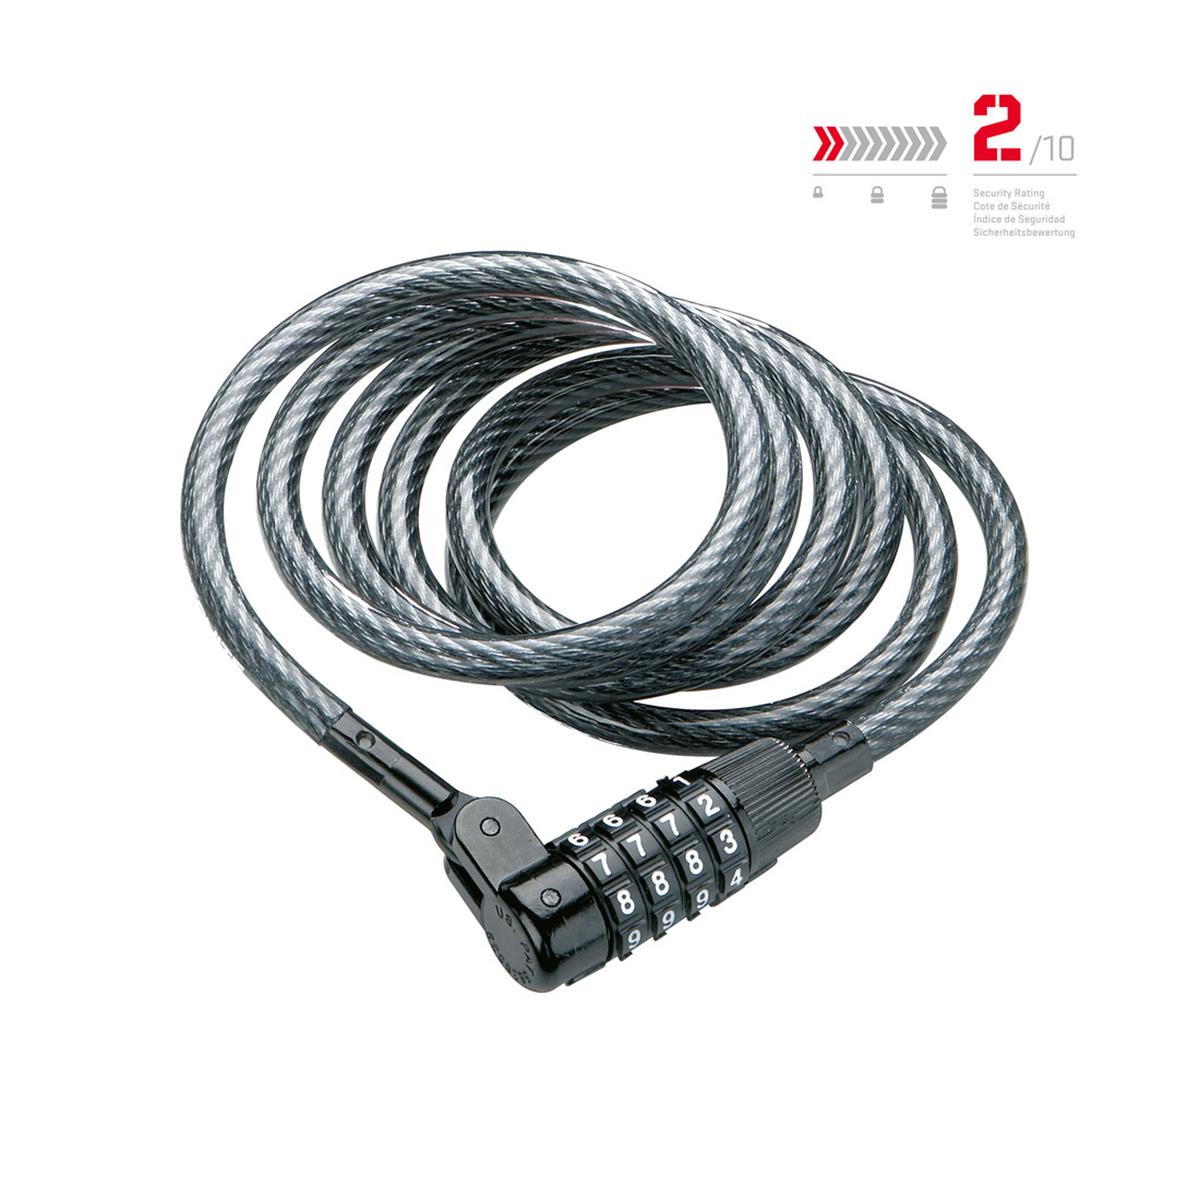 Kryptonite Kabelschloss Krypto Flex 815 Combo Cable, 150 cm